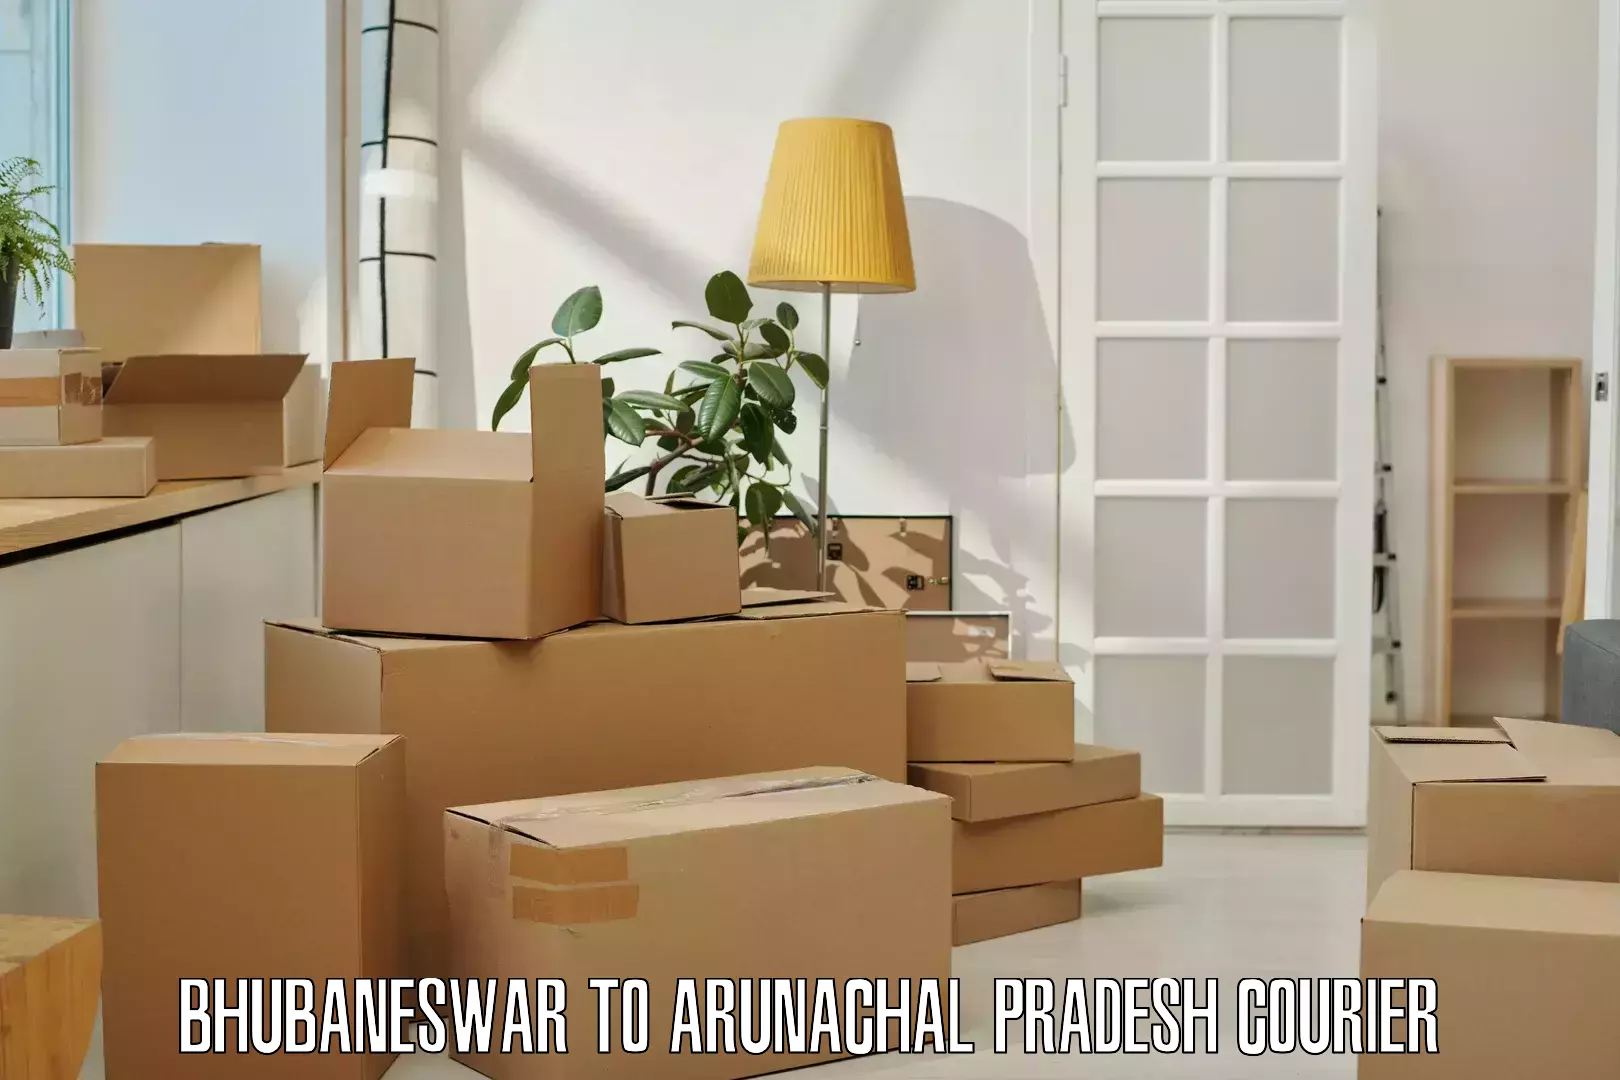 Efficient parcel tracking in Bhubaneswar to Lower Subansiri